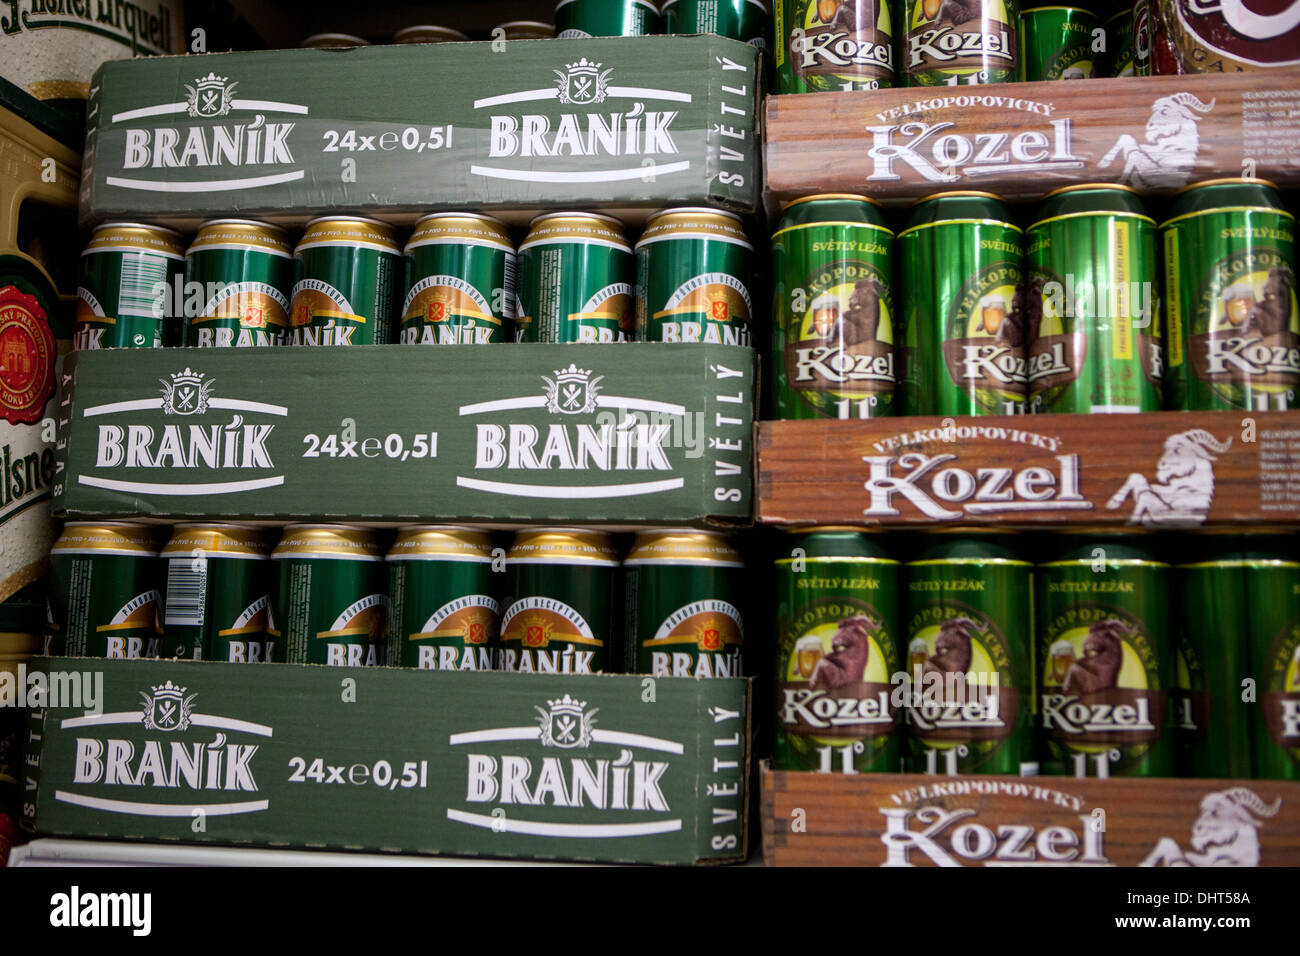 Le lattine in una cassa di marche di birra Kozel e Braník. Nel supermercato ceco Foto Stock